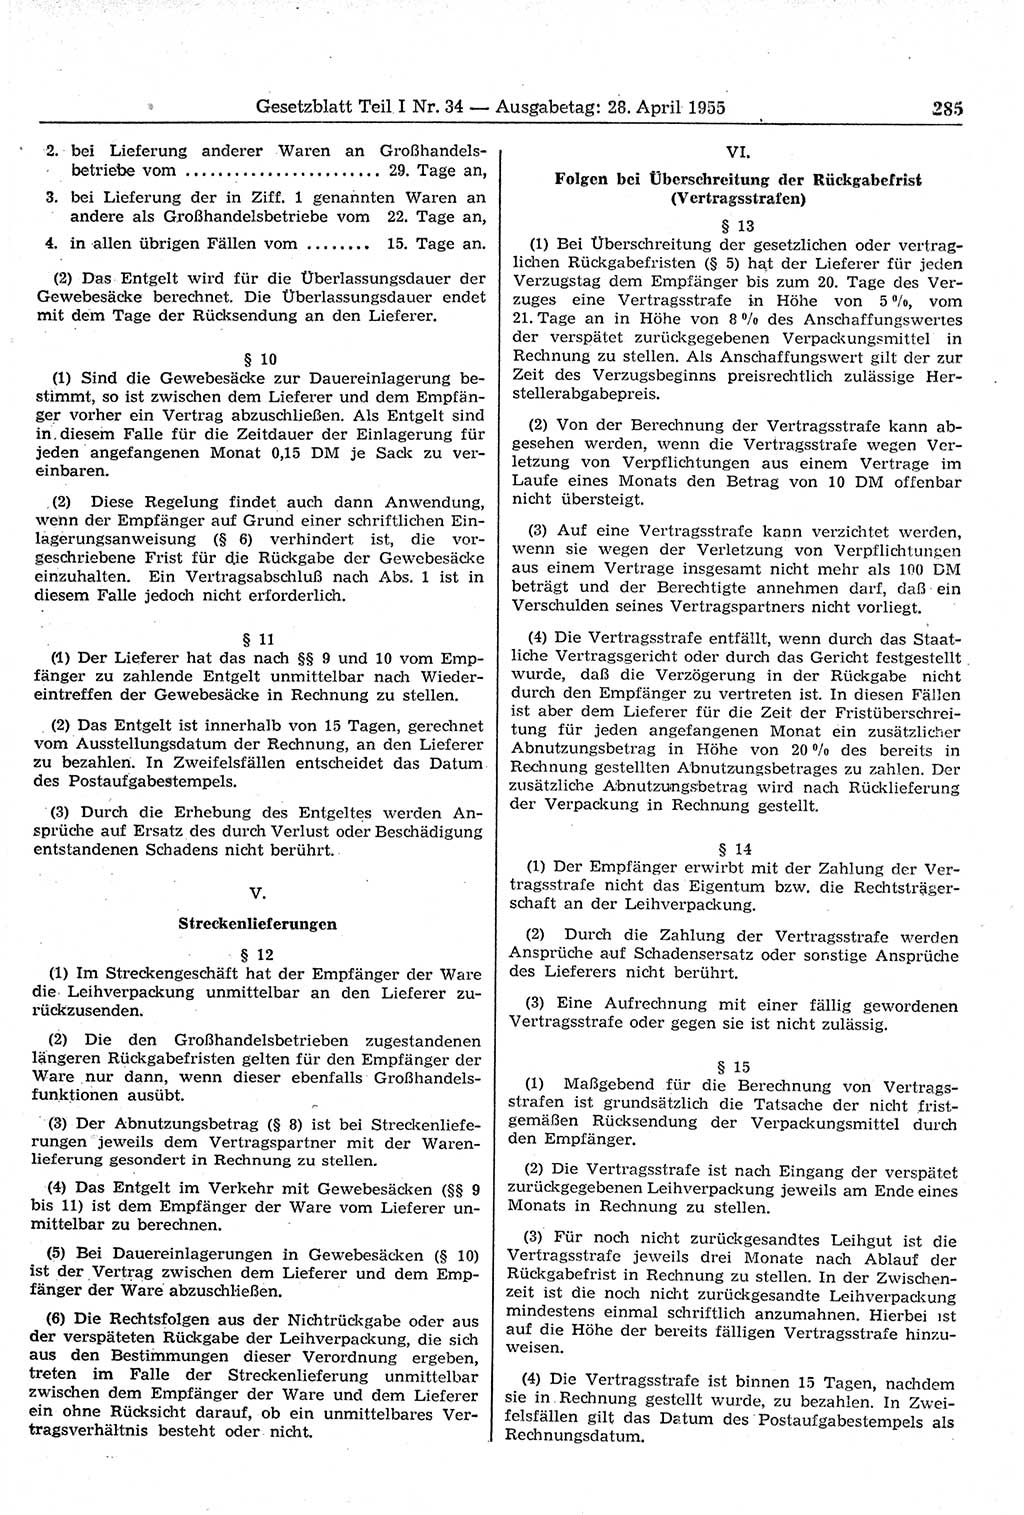 Gesetzblatt (GBl.) der Deutschen Demokratischen Republik (DDR) Teil Ⅰ 1955, Seite 285 (GBl. DDR Ⅰ 1955, S. 285)